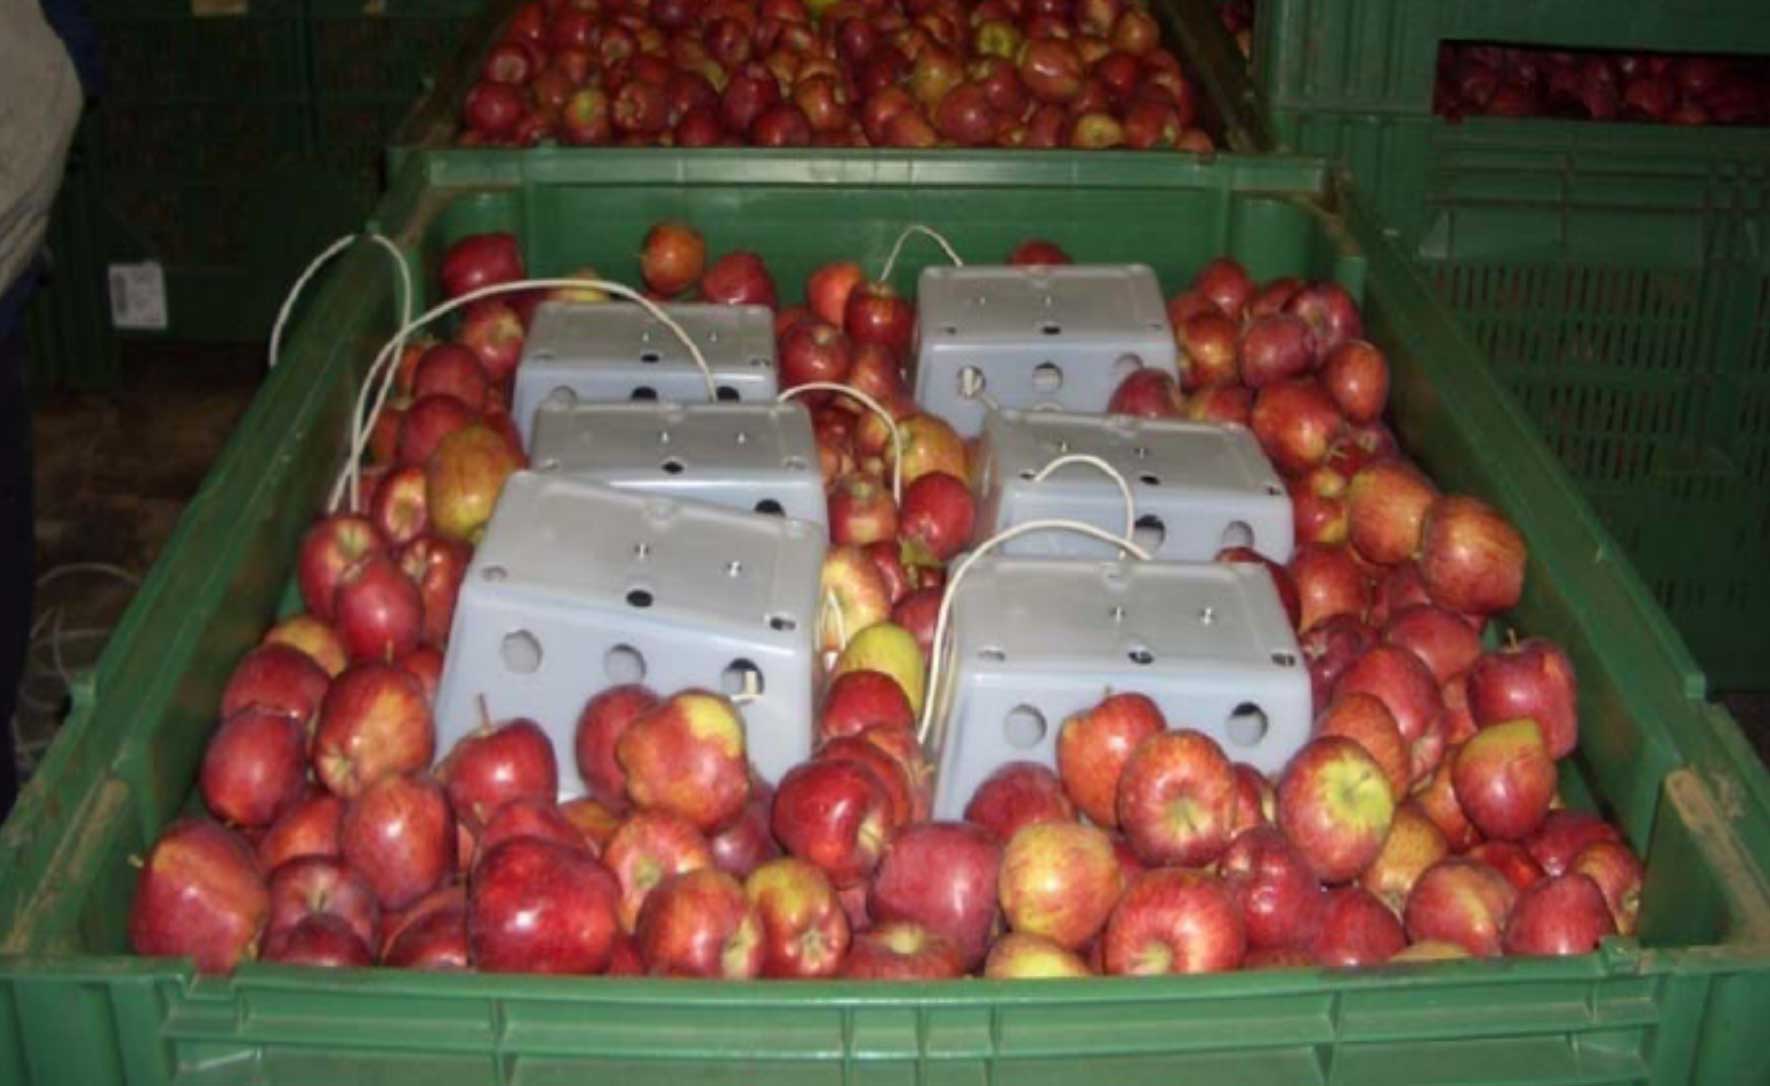 Figura 3. Sensores instalados en un contendedor de manzanas que miden la fluorescencia emitida por los frutos